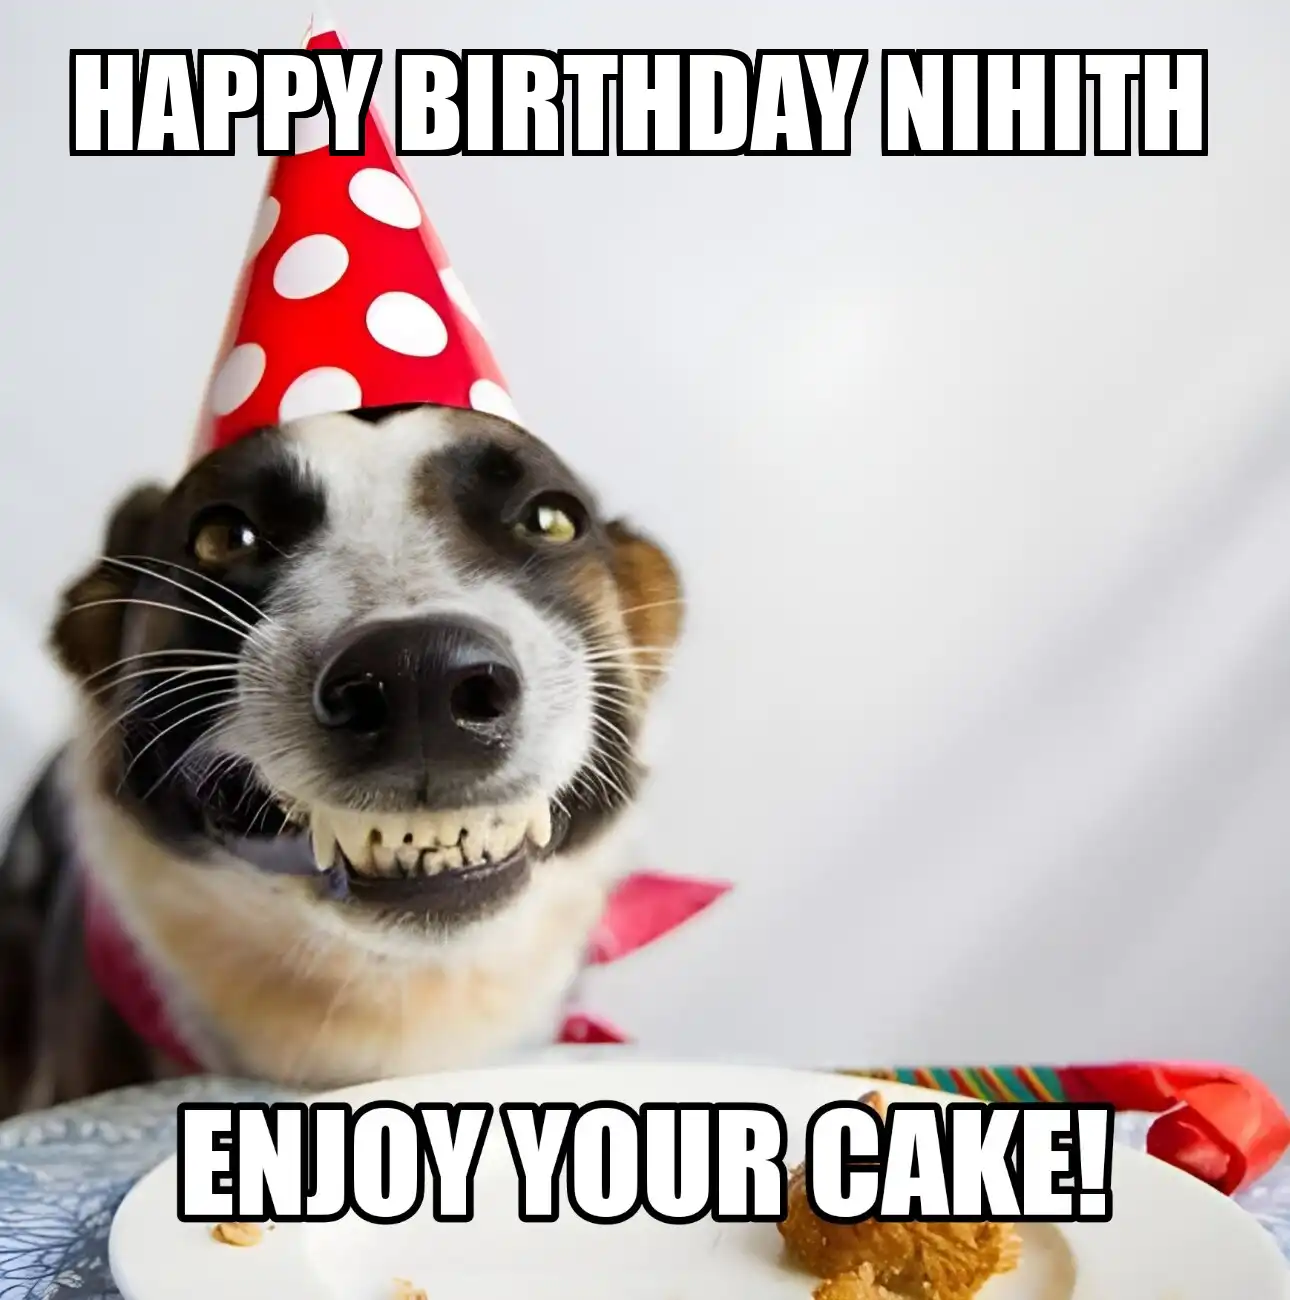 Happy Birthday Nihith Enjoy Your Cake Dog Meme